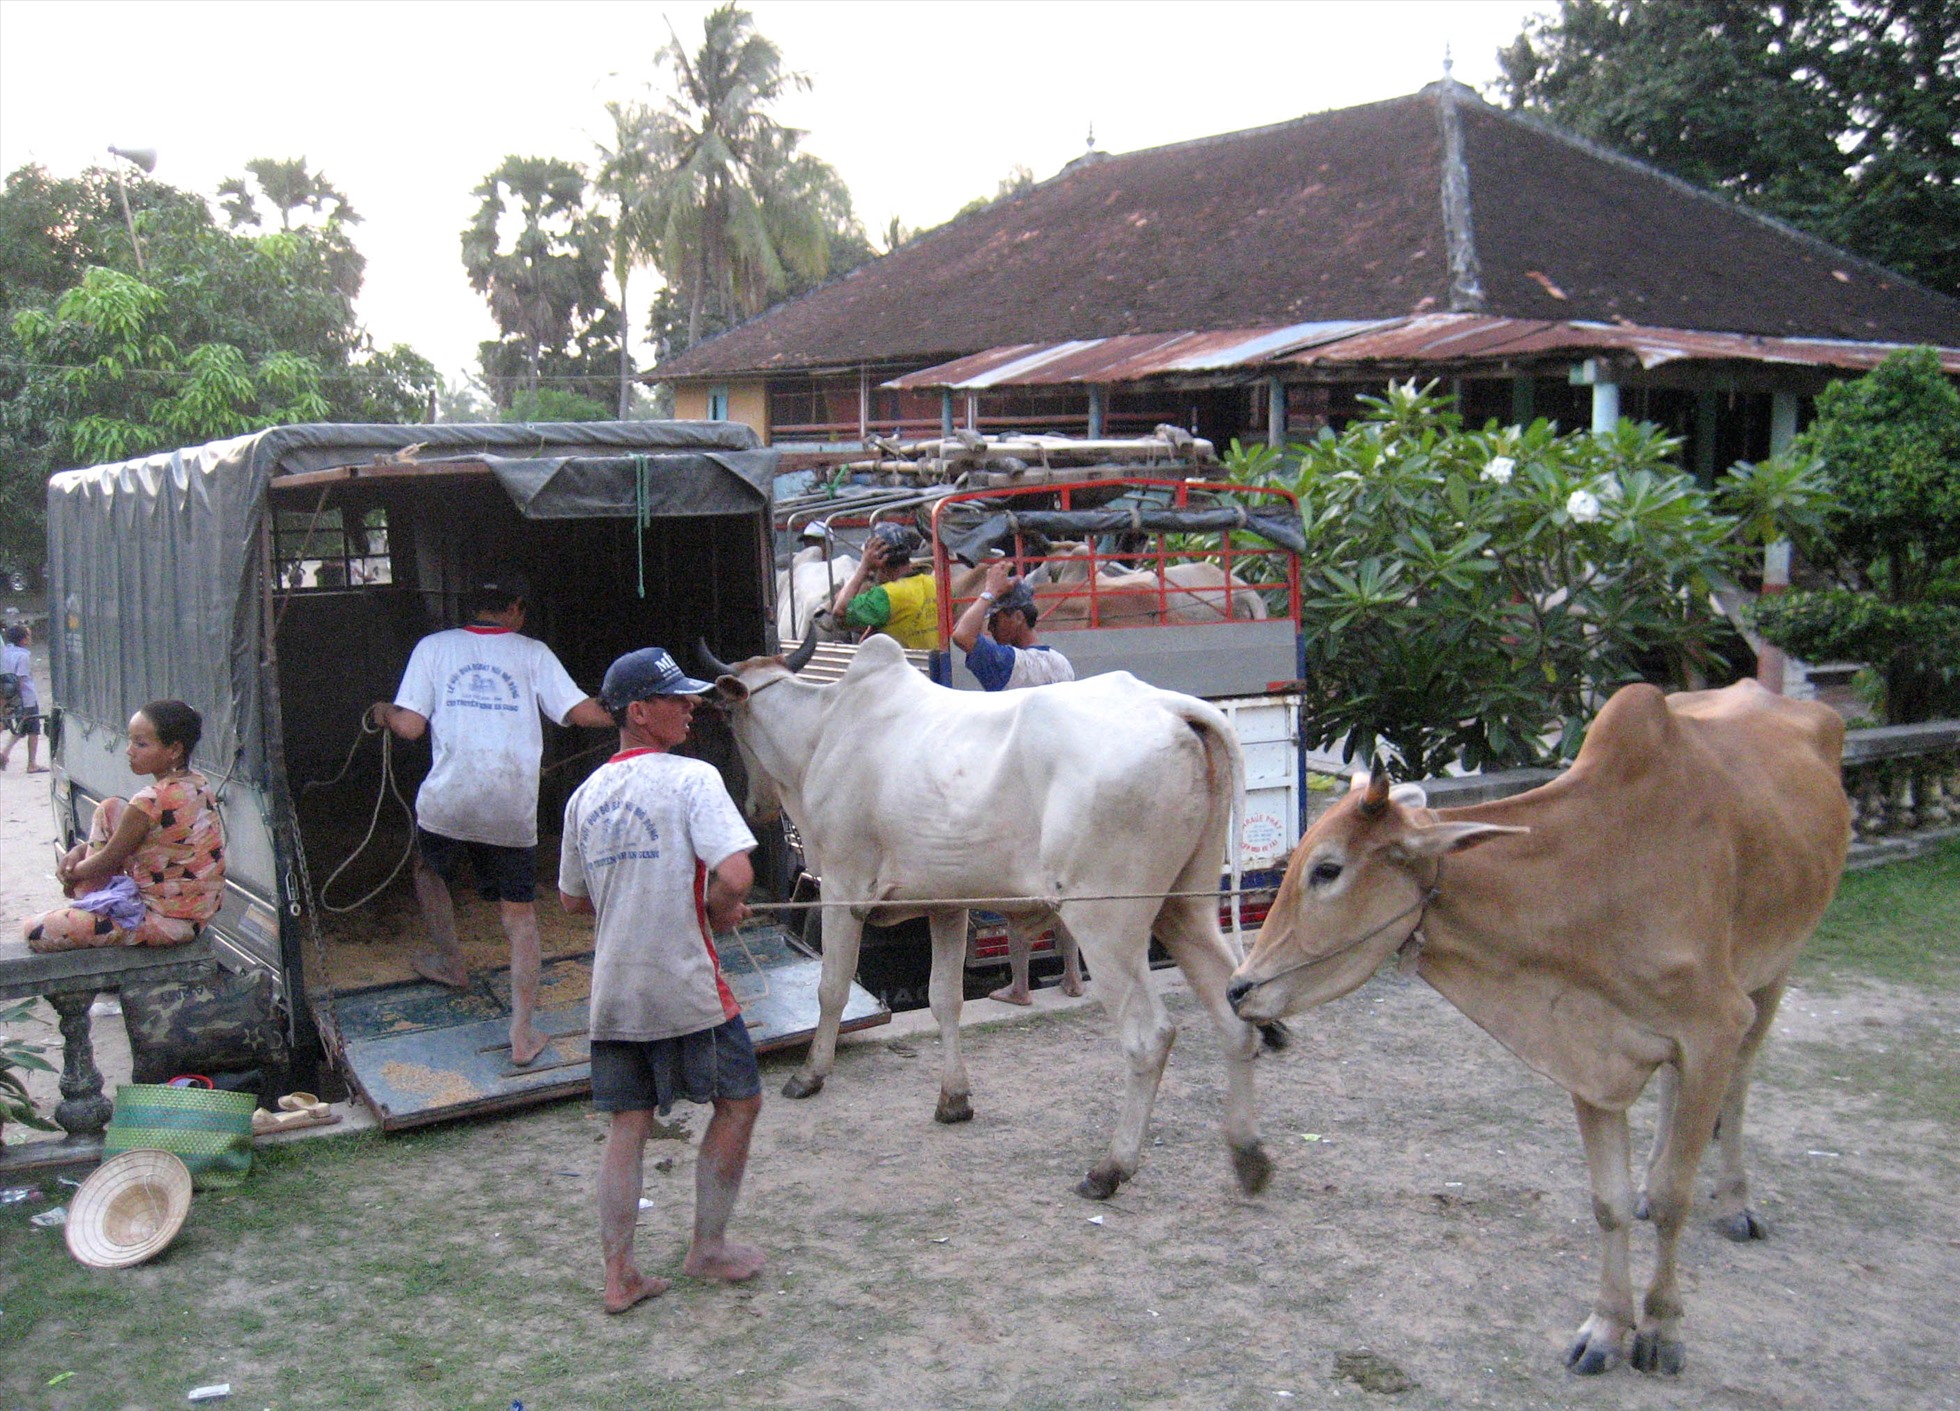 Đến với hội đua bò Bảy Núi, người xem còn được trải nghiệm văn hóa của đồng bào Khmer với việc xem bò như thú cưng (PET). Các chủ bò bỏ tiền thuê xe tải chở bò đến sân đua. Ảnh: LT